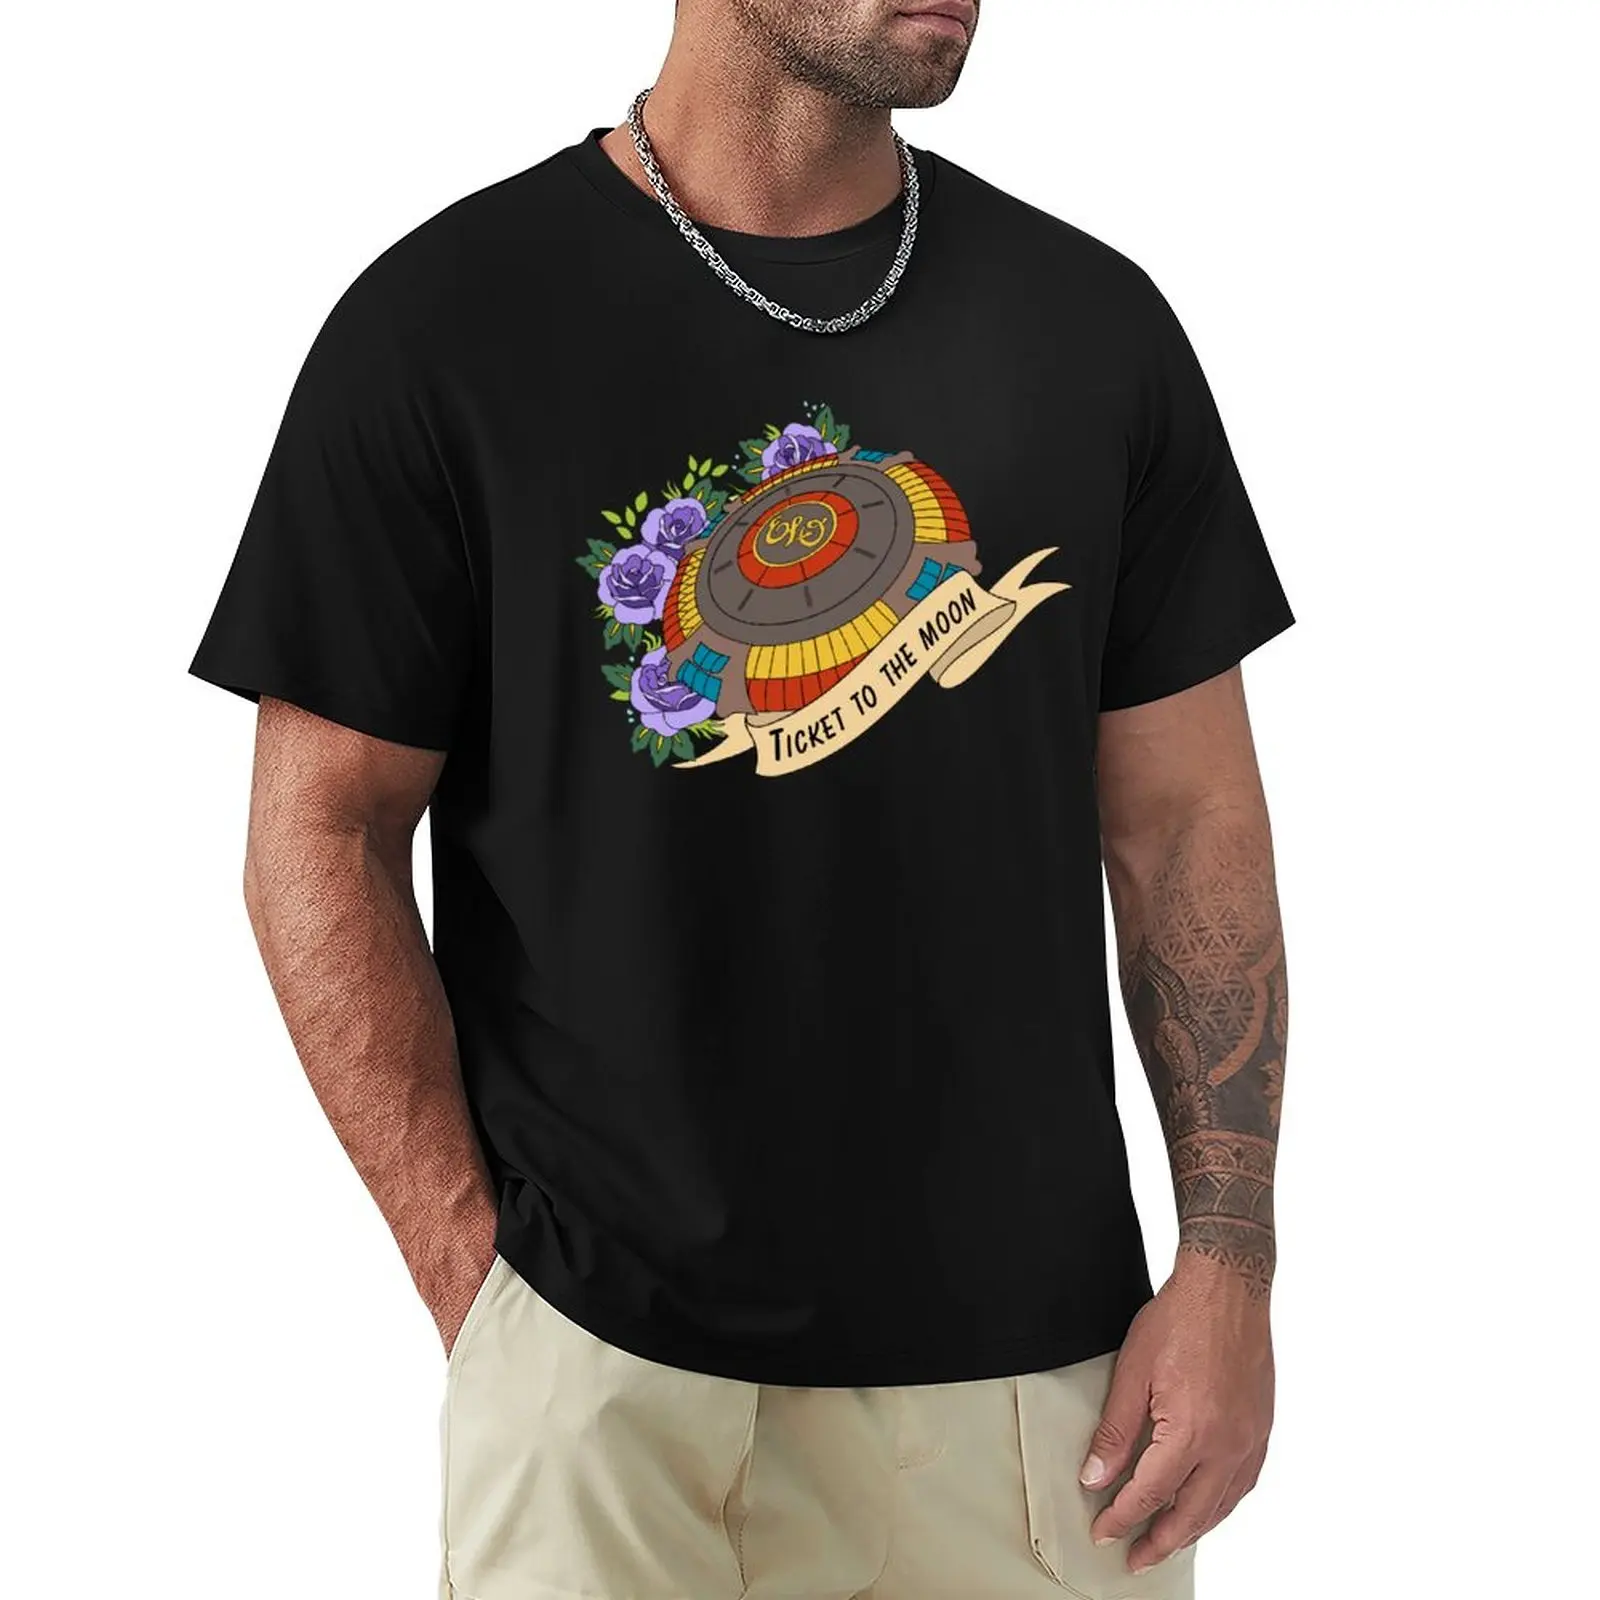 

tshirt brand t shirt ELO Spaceship T-Shirt anime aesthetic clothes black t shirts humor t shirt shirt mens t shirts